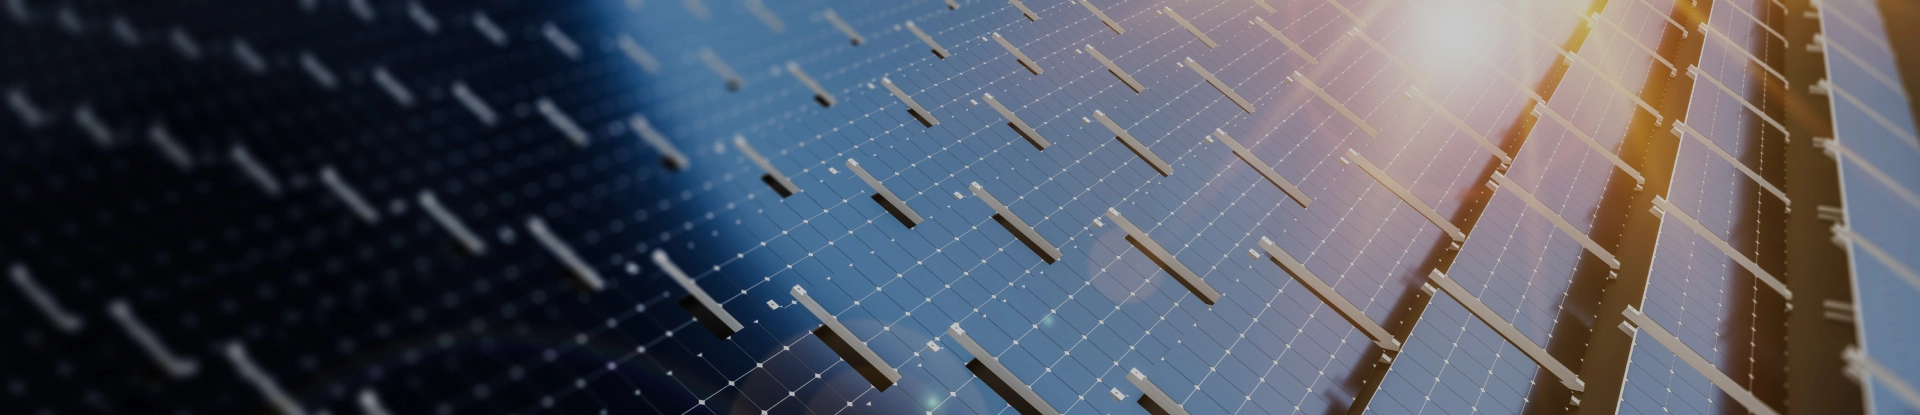 Pannelli fotovoltaici per l'energia da fonti rinnovabili